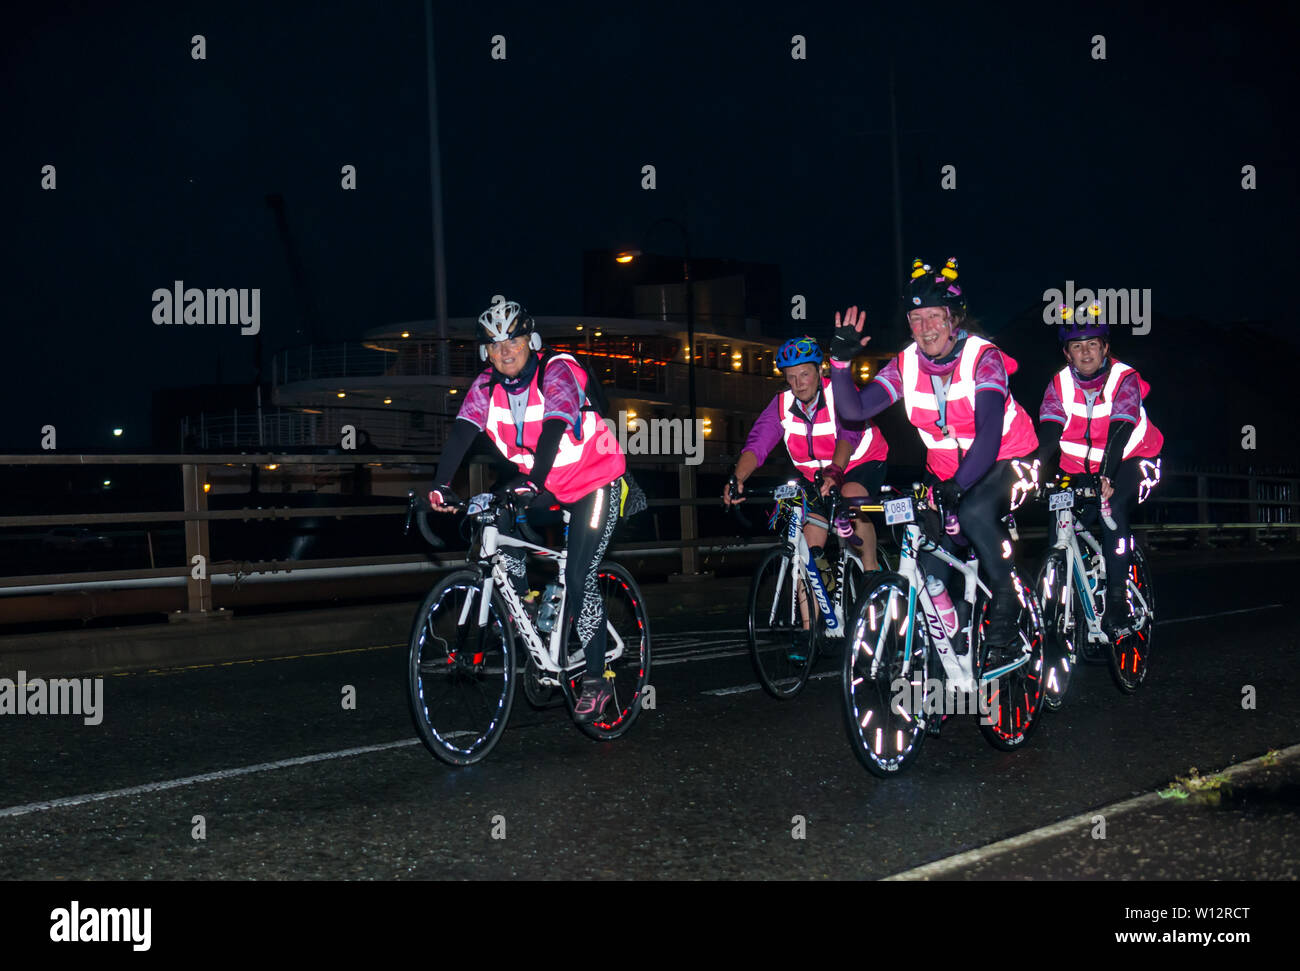 Radfahren In Der Nacht Stockfotos und -bilder Kaufen - Alamy